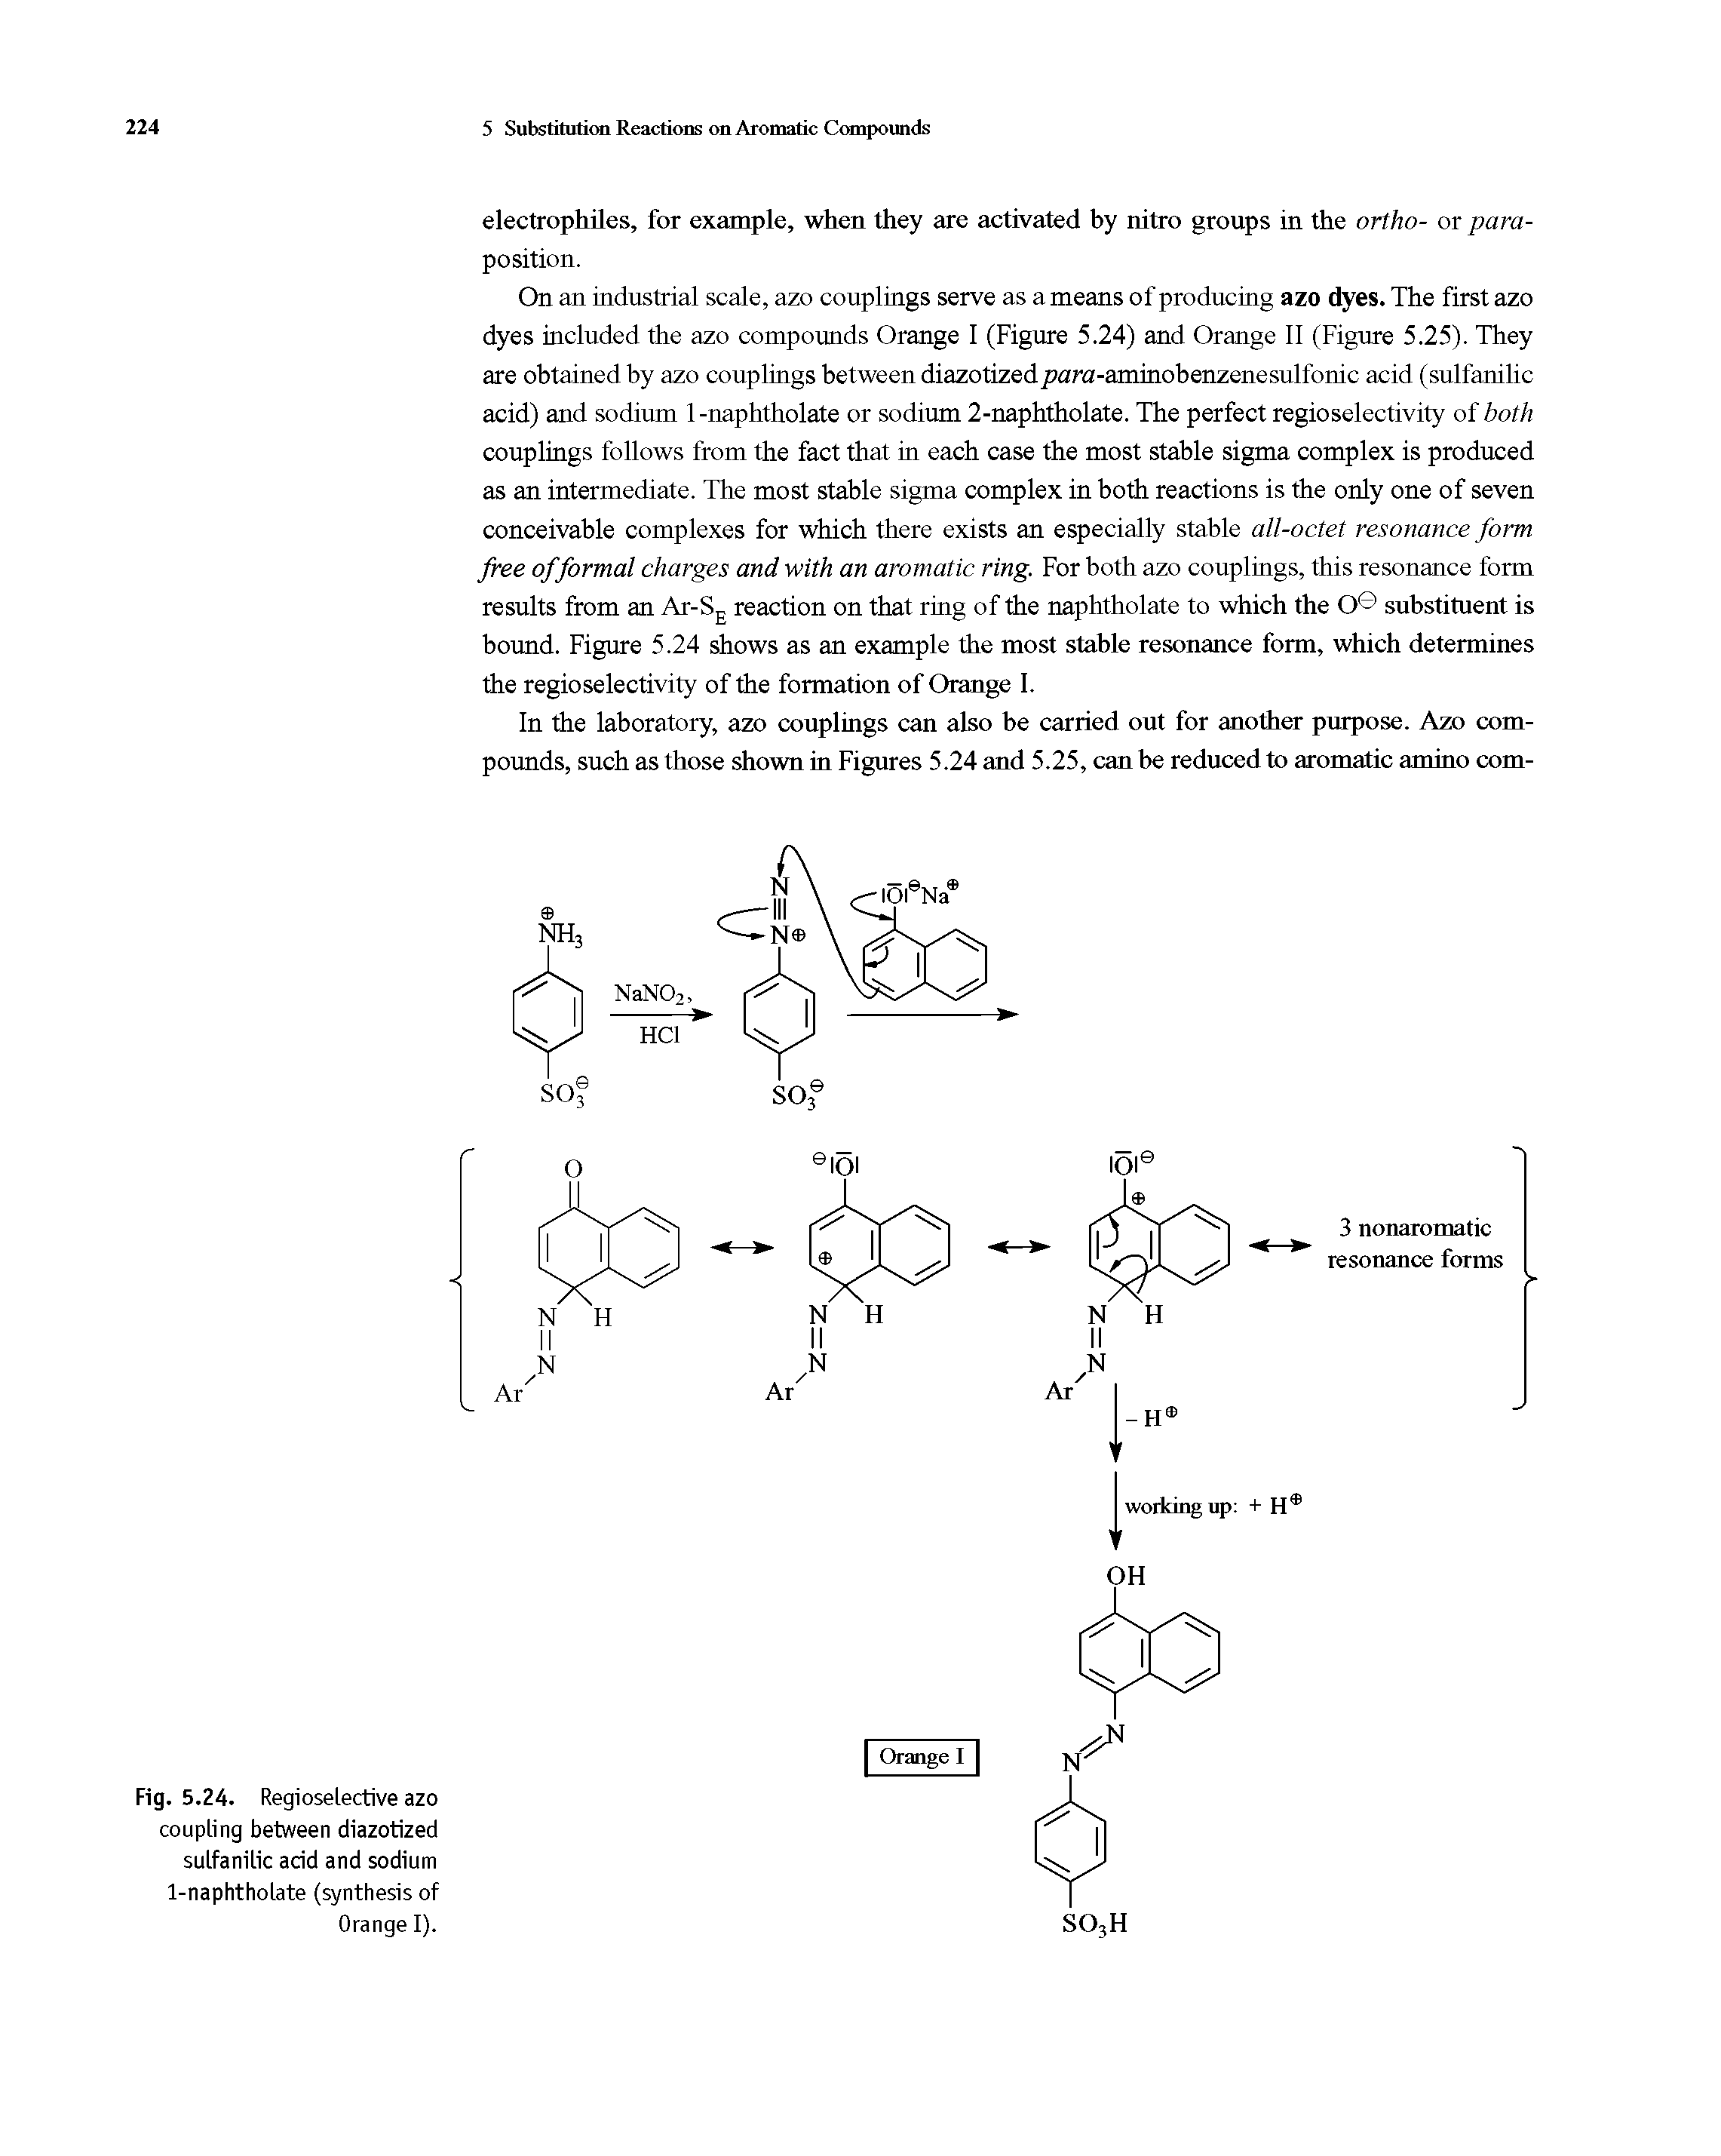 Fig. 5.24. Regioselective azo coupling between diazotized sulfanilic acid and sodium 1-naphtholate (synthesis of Orange I).